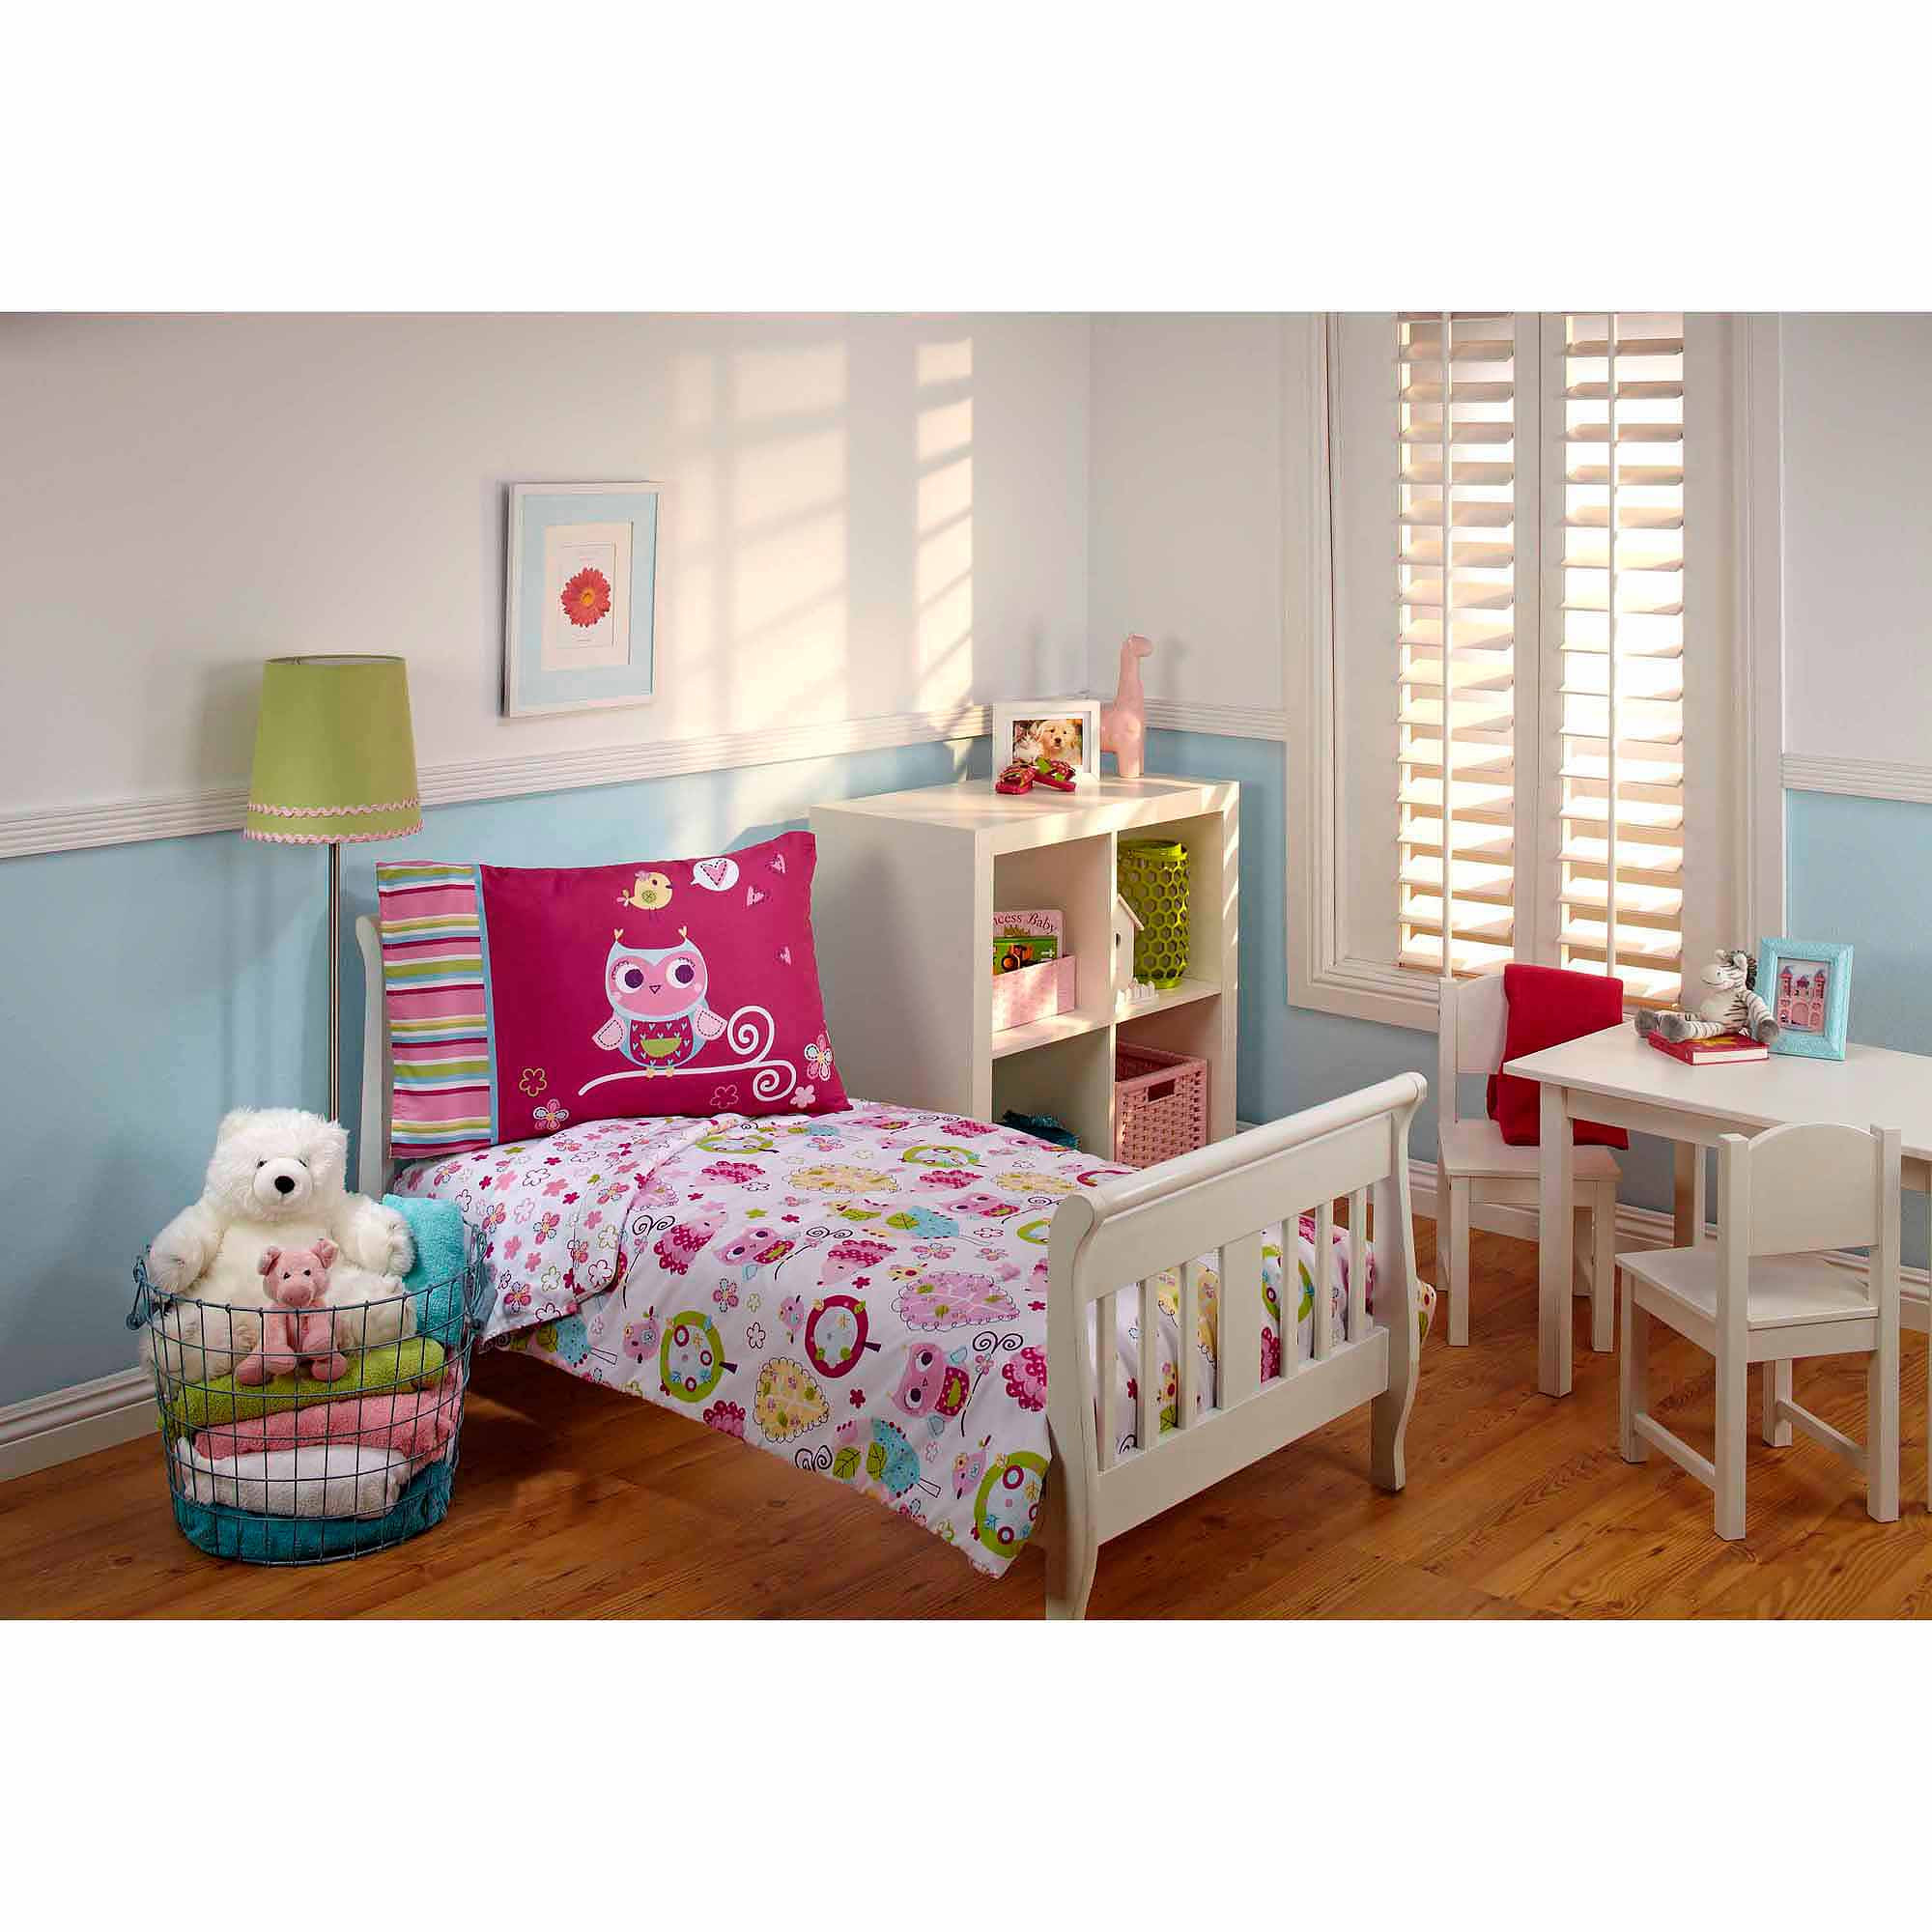 Toddler Bedroom Set for Girls Inspirational Girls toddler Bedding Sets Walmart